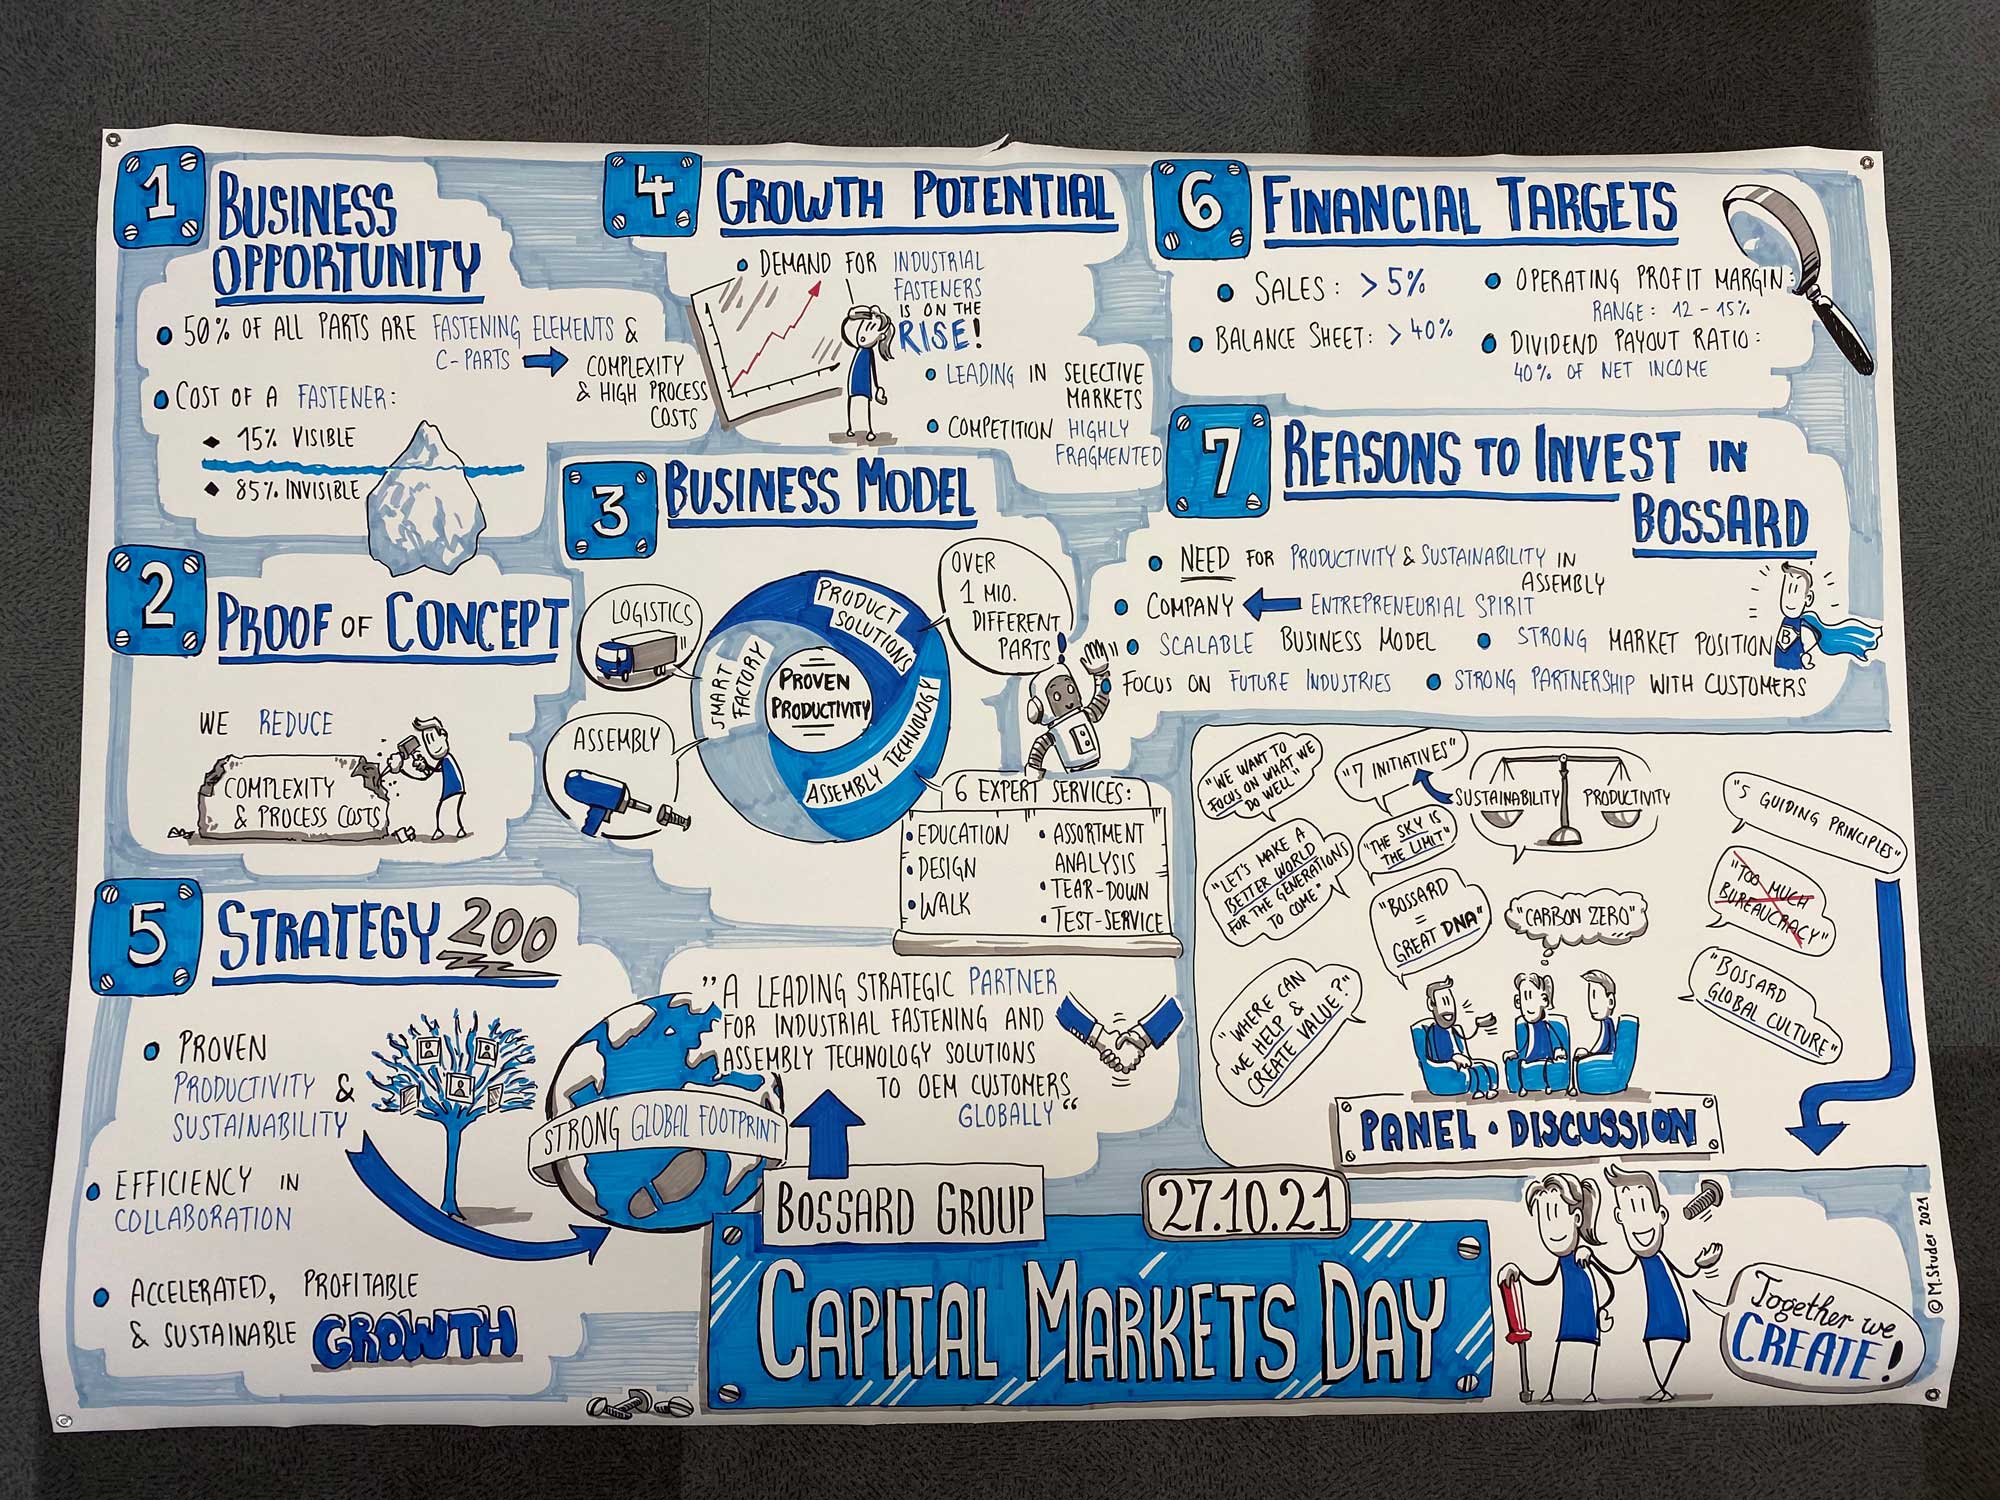 Capital Markets Day 2021